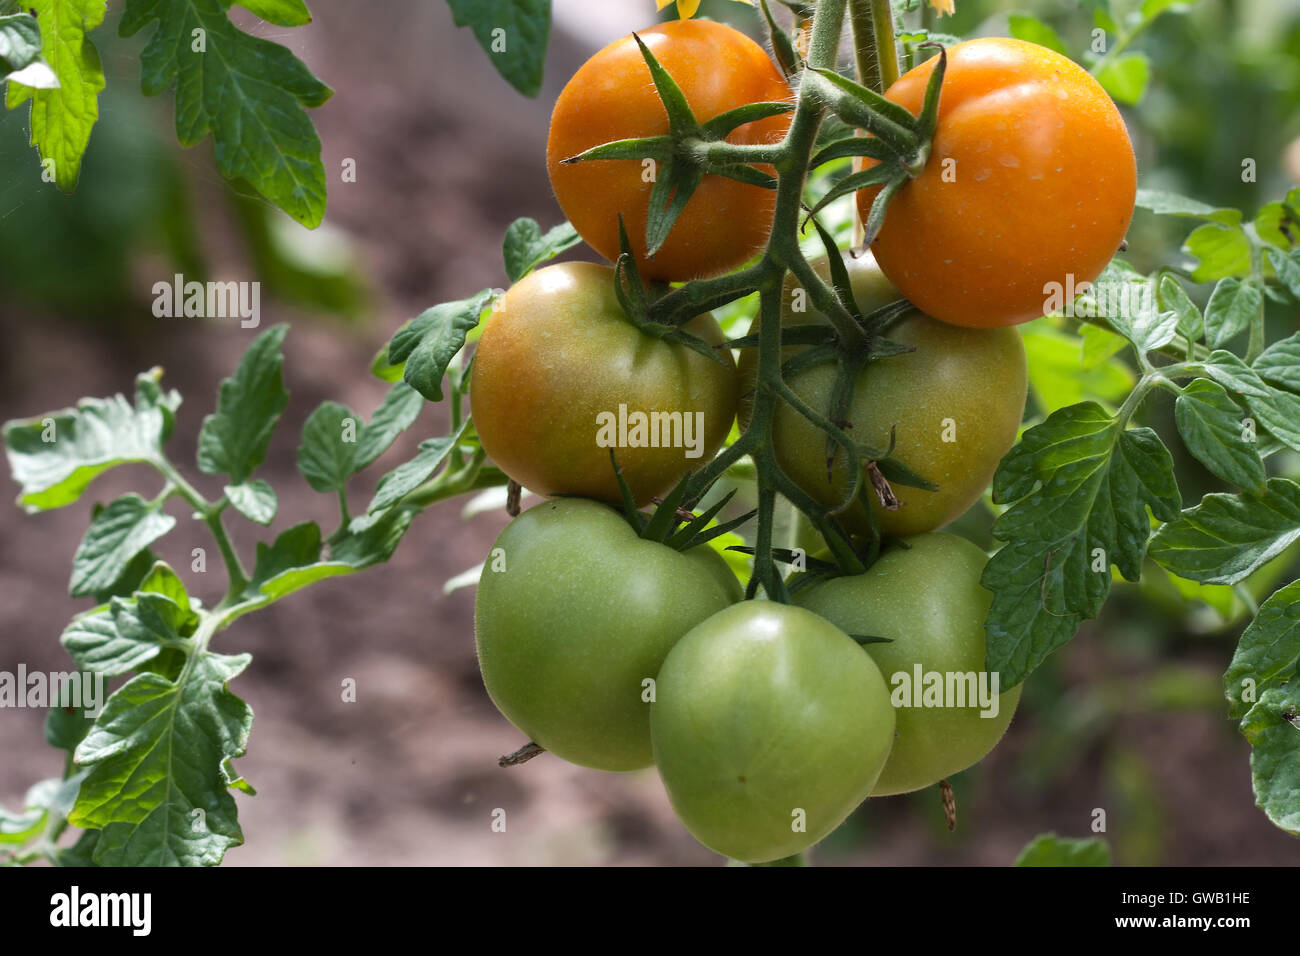 Landwirtschaft-Bild: unreife grüne und rote frische Tomaten wachsen in einem Gemüsegarten oder Bauernhof angebaut. Stockfoto